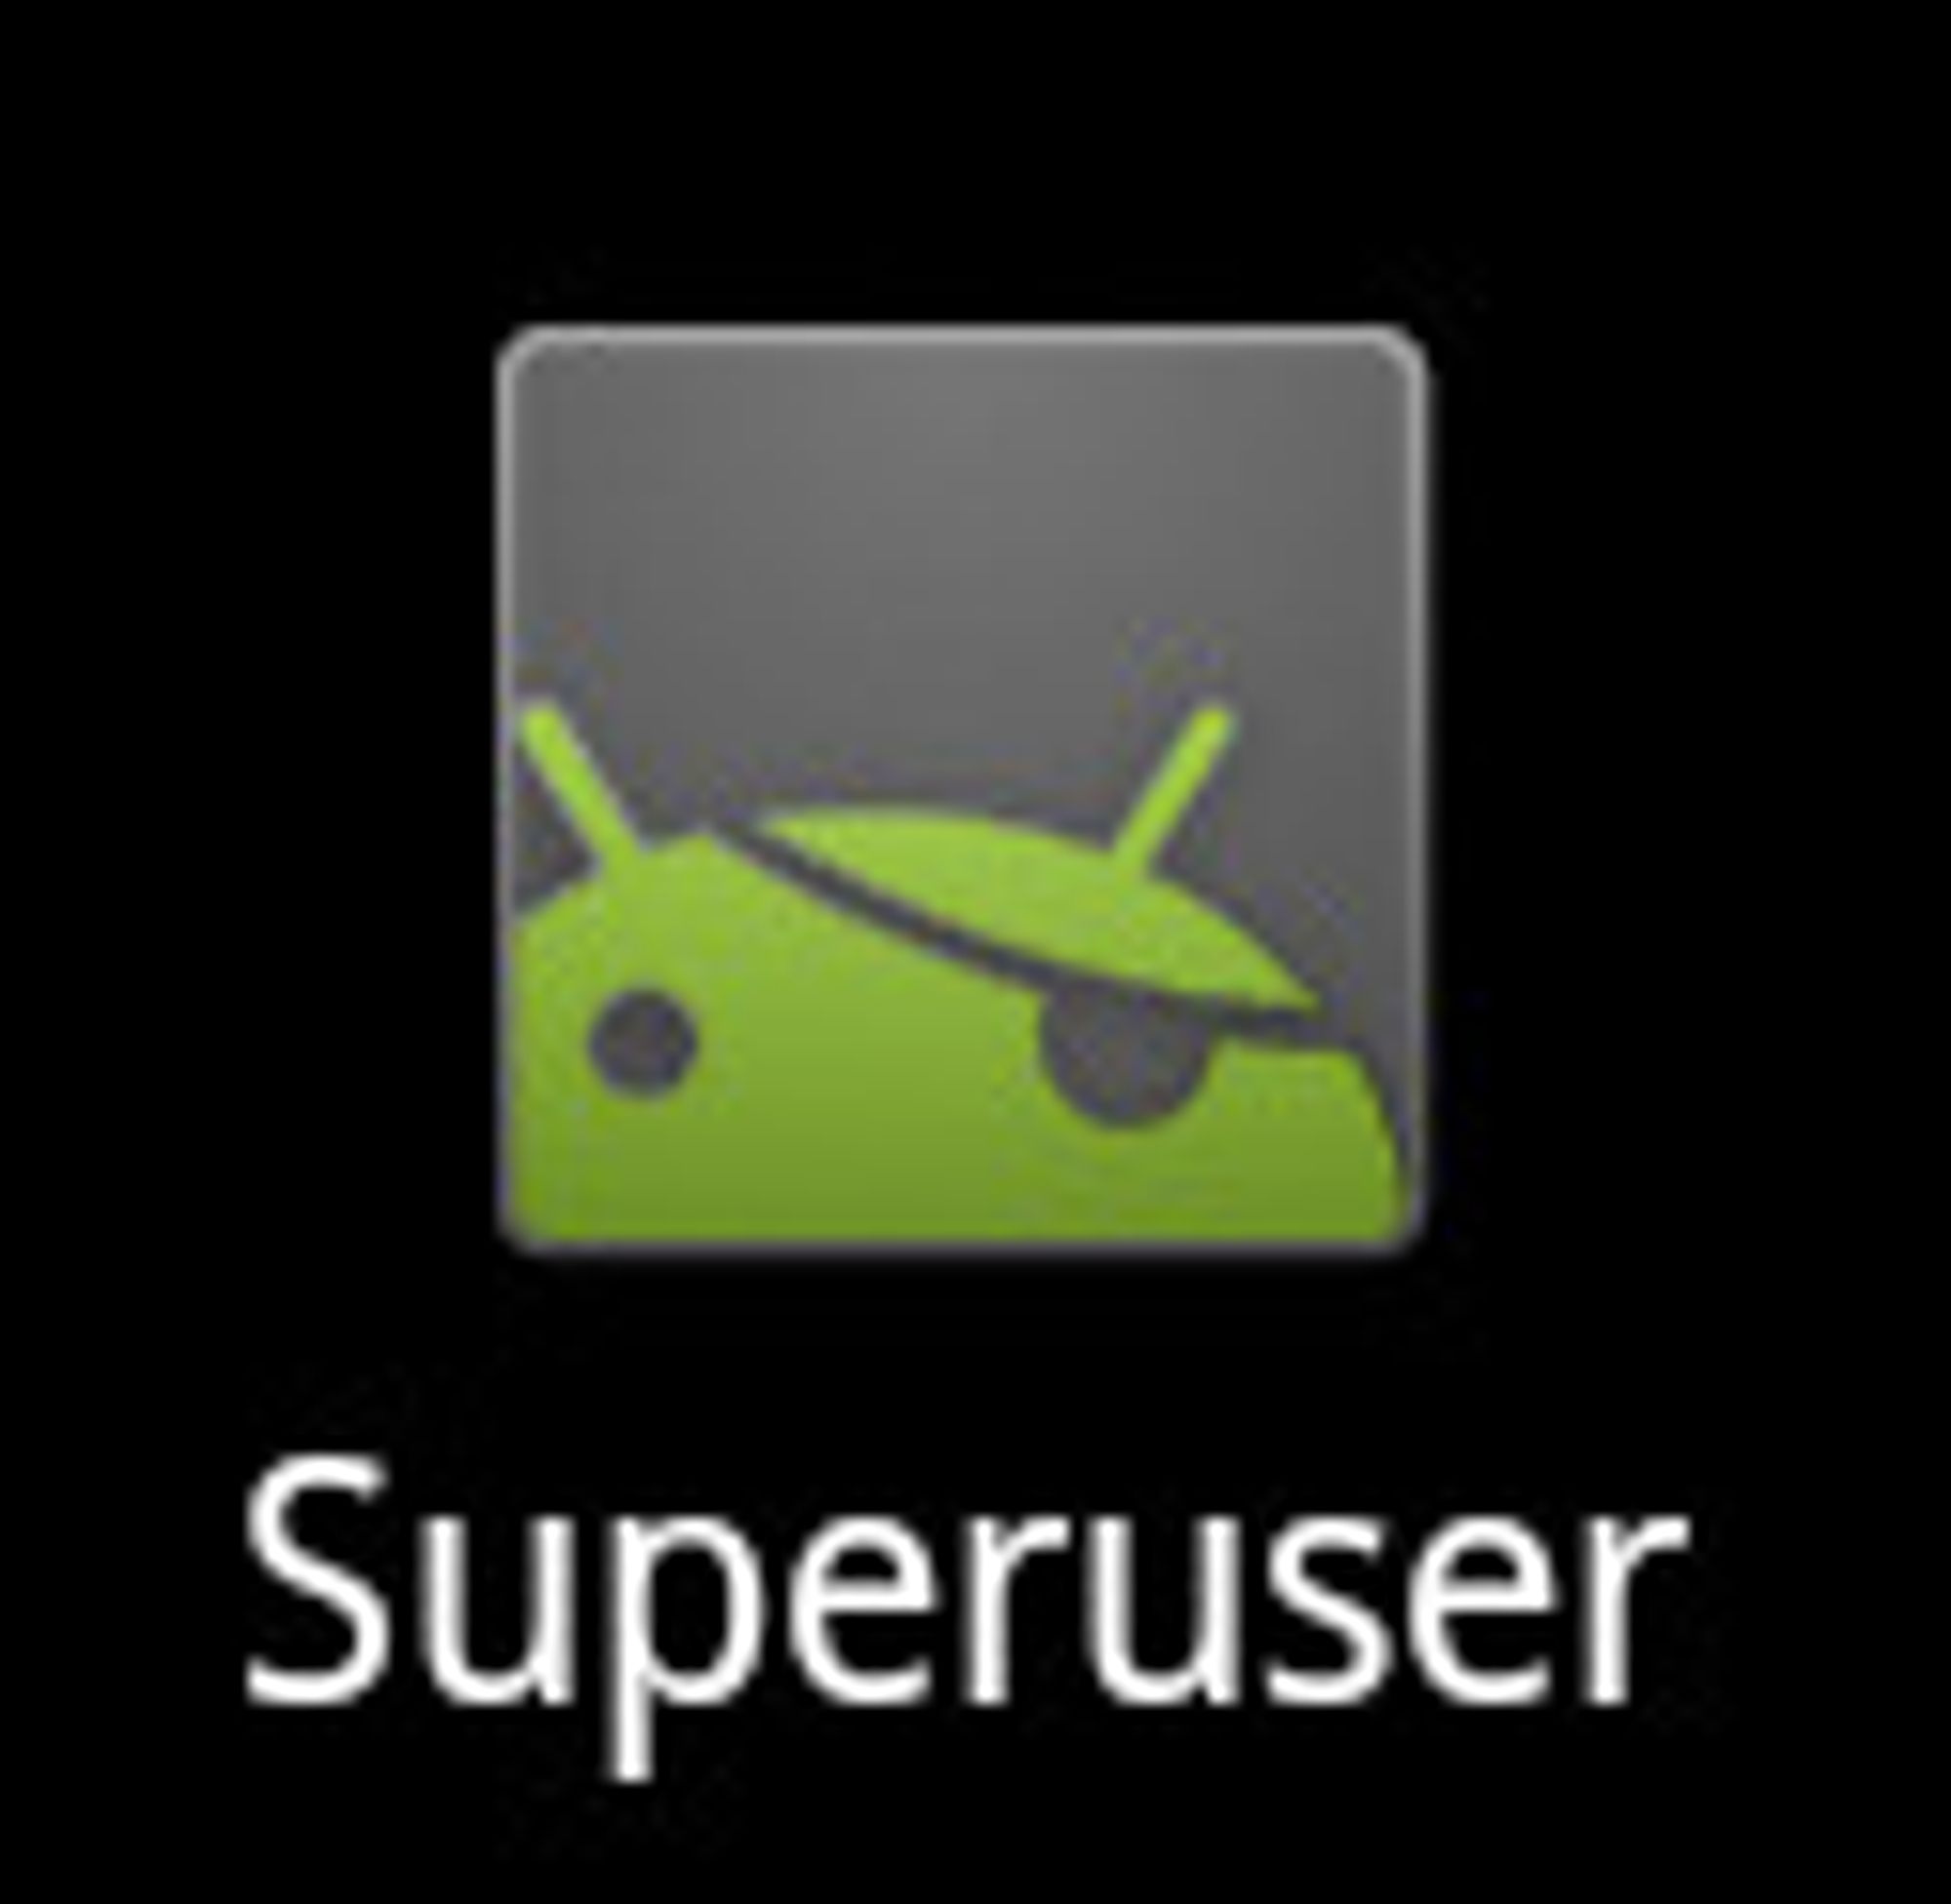 Ikonet til Superuser-applikasjonen.